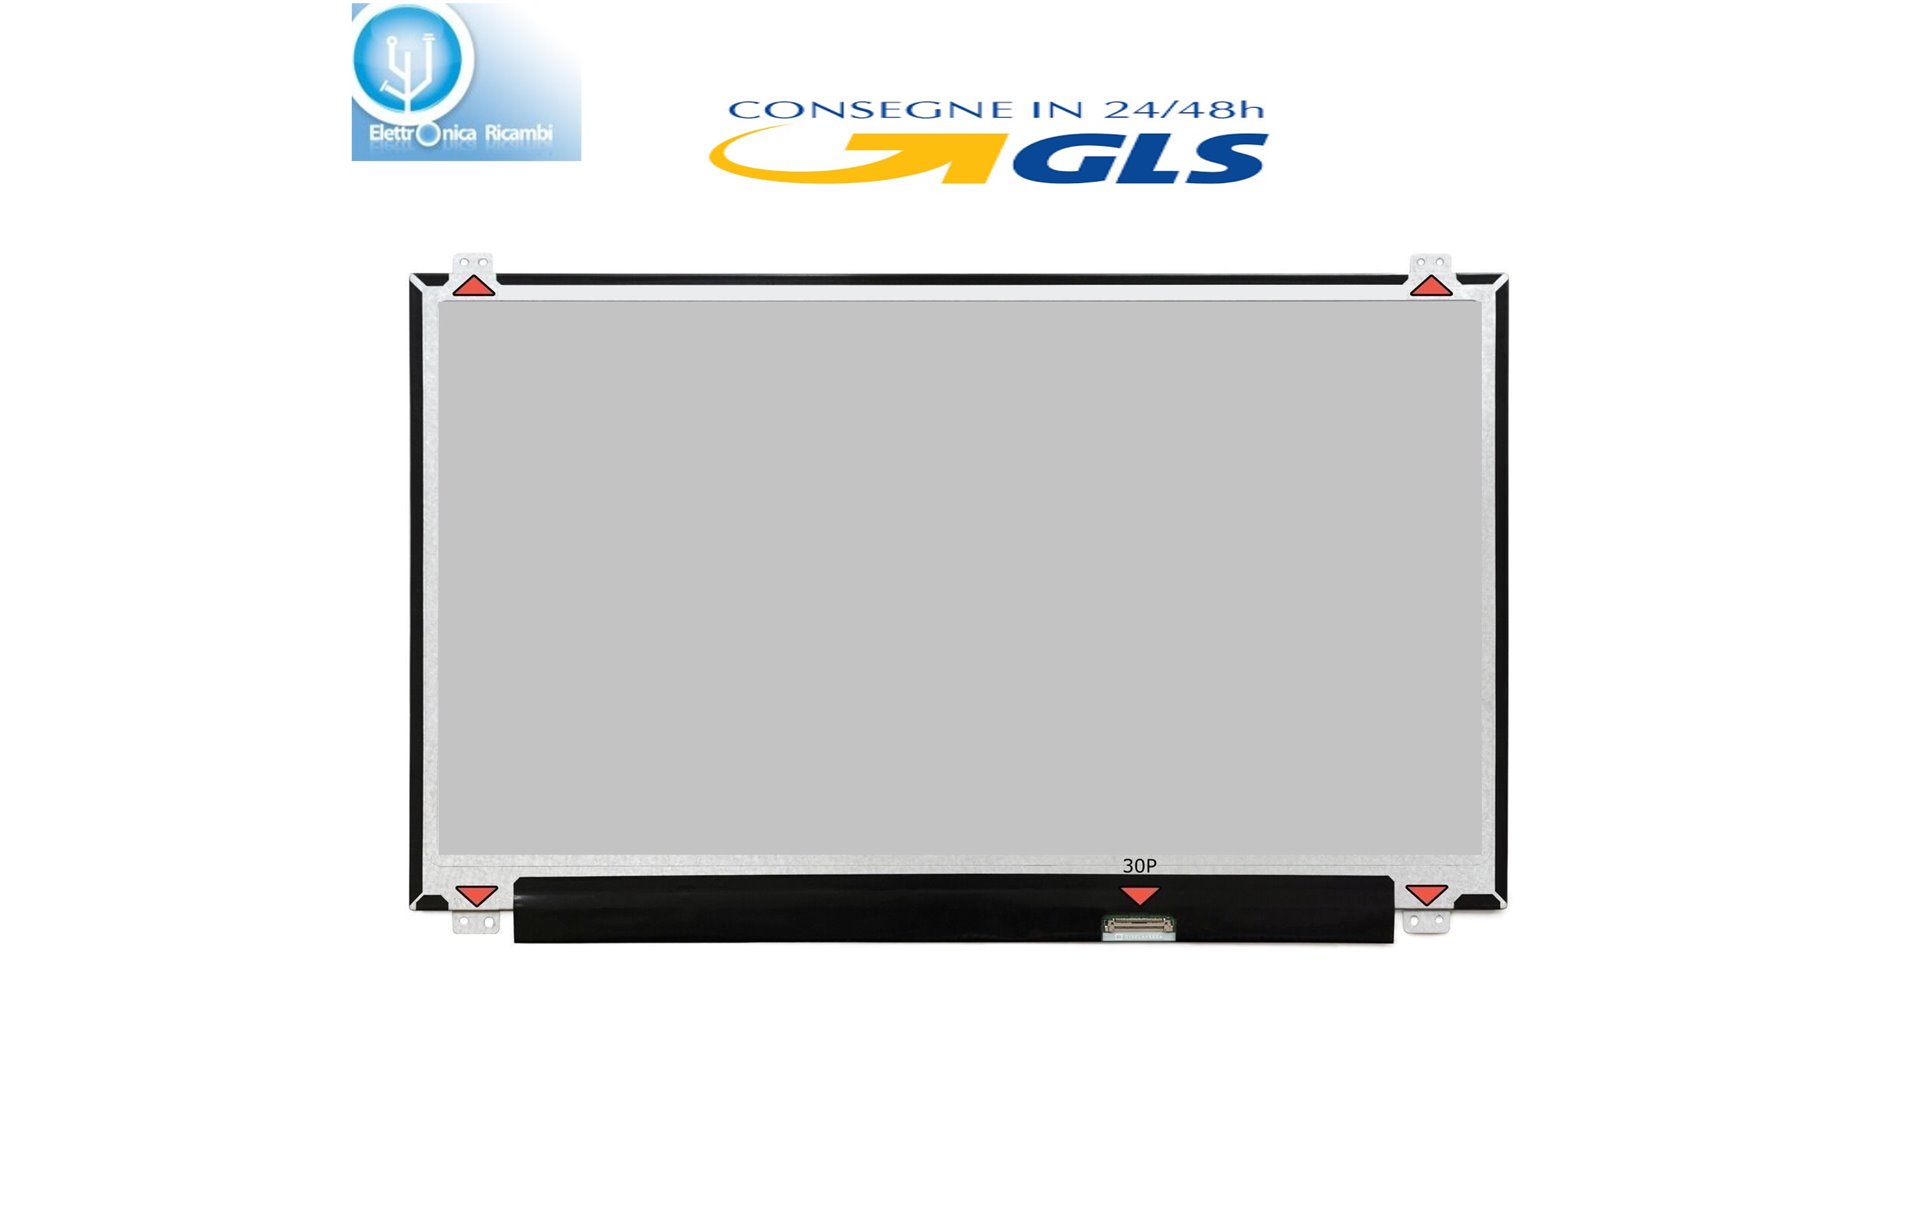 DISPLAY LCD ACER ASPIRE V5-531-967B4G50MASS 15.6 1366x768 LED 30 pin